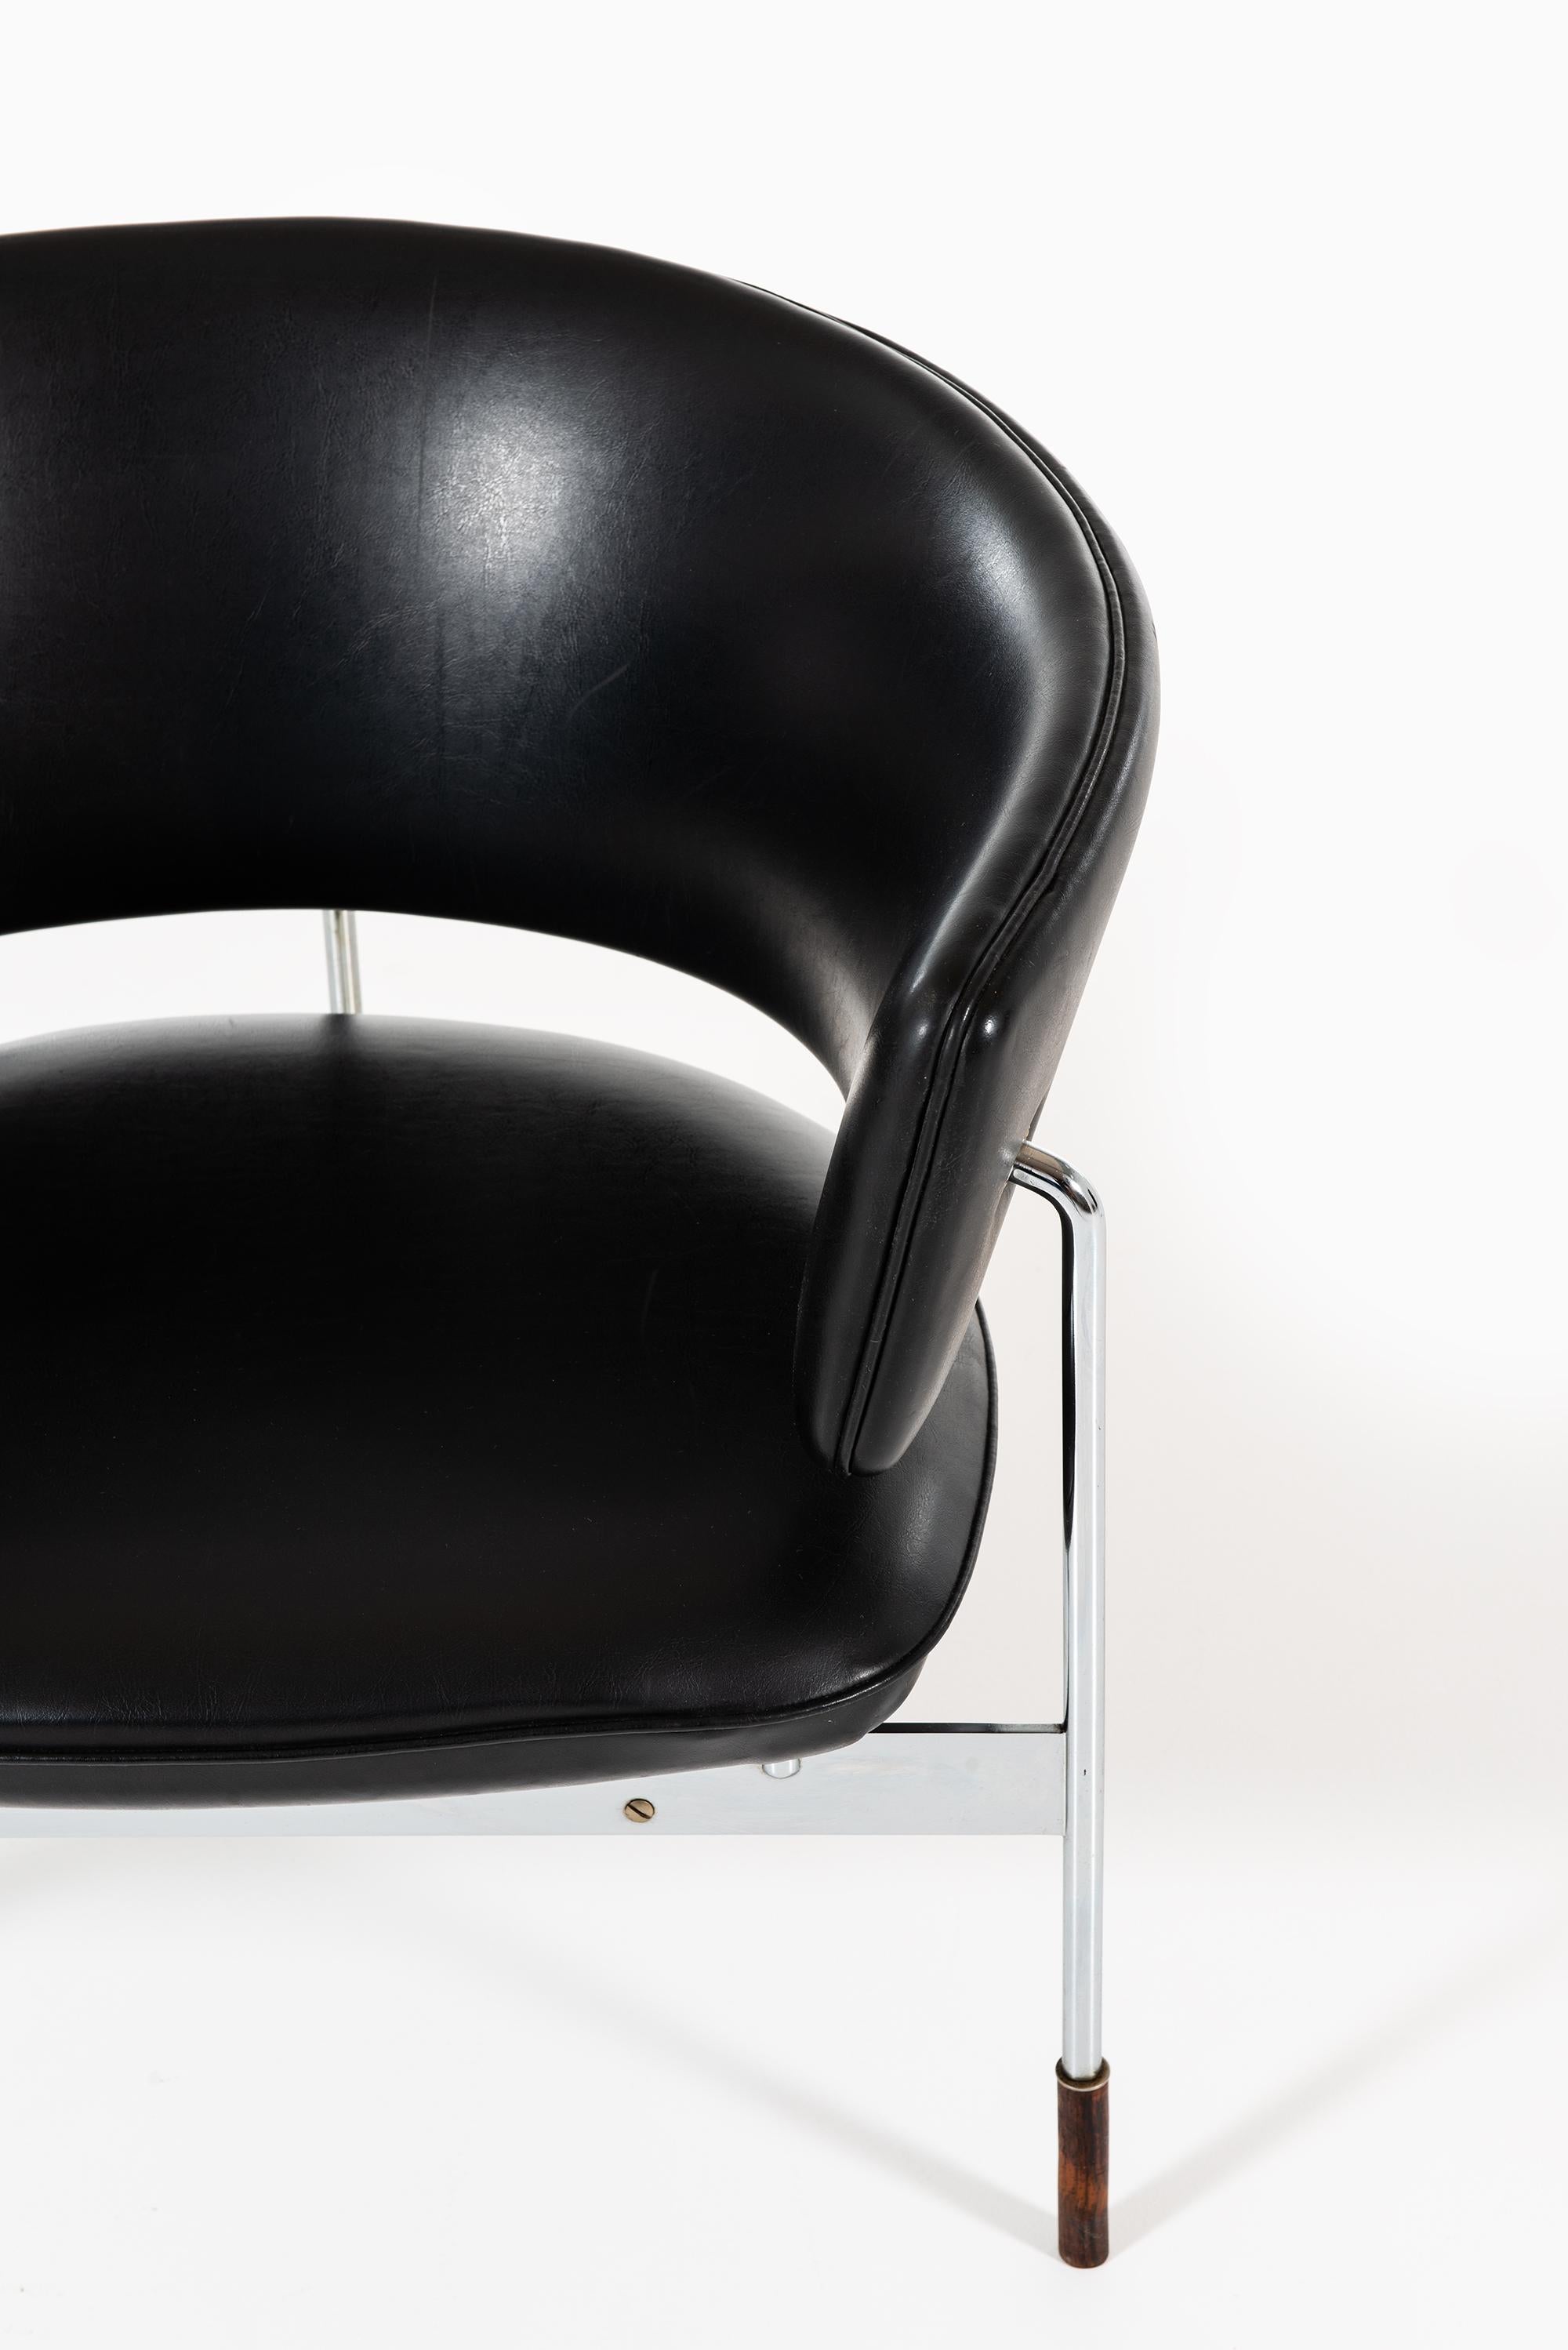 Très rare paire de fauteuils modèle Cirkel conçue par Sigurd Resell. Produit par Rastad & Relling en Norvège.